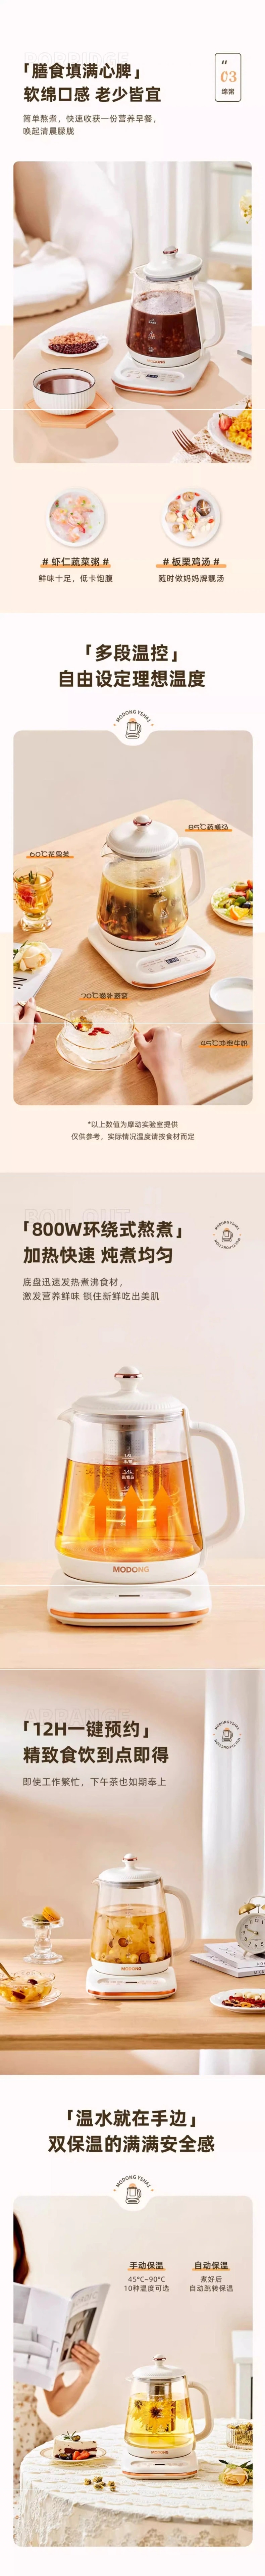 【中国直邮】MODONG摩动 养生壶 1.6L 能煮能炖 全自动多功能煮茶器 烧水煮茶炖银耳燕窝 110V 带滤网+炖盅